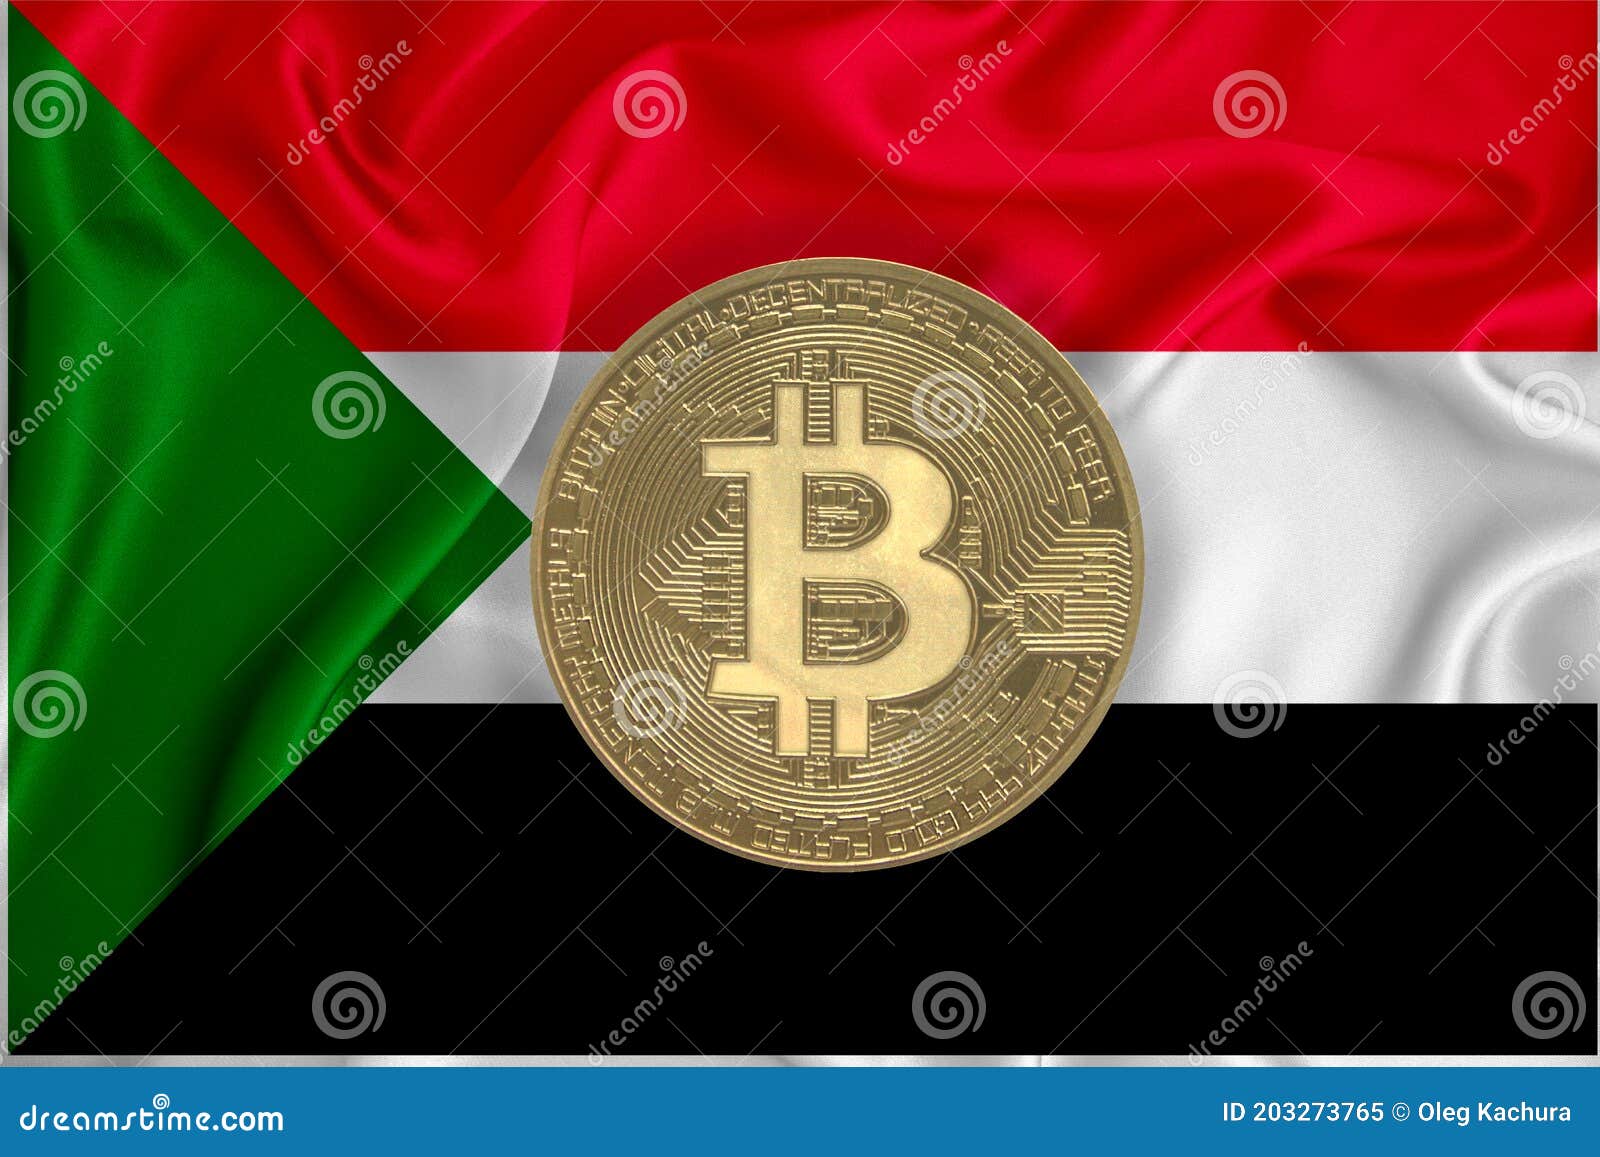 buy bitcoin in sudan